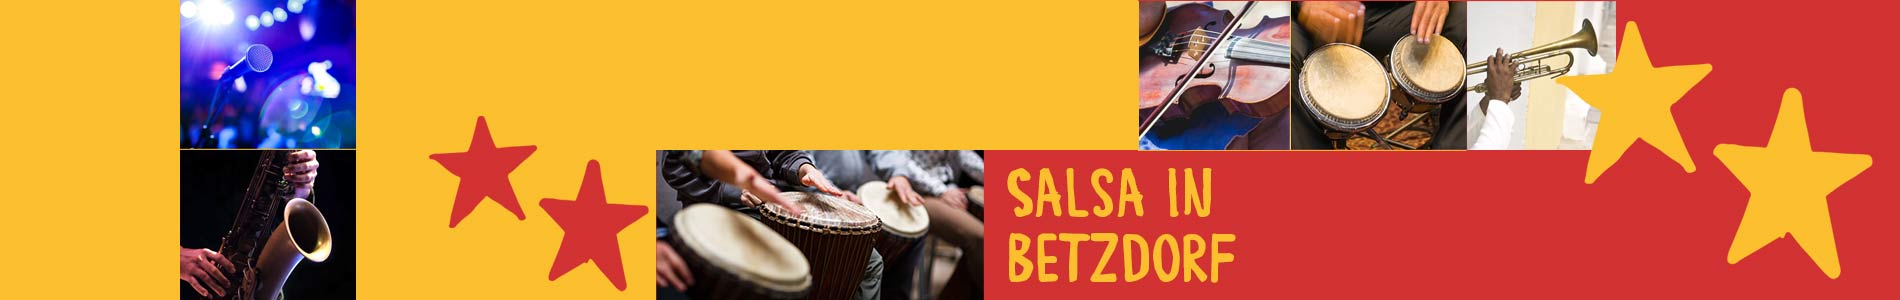 Salsa in Betzdorf – Salsa lernen und tanzen, Tanzkurse, Partys, Veranstaltungen